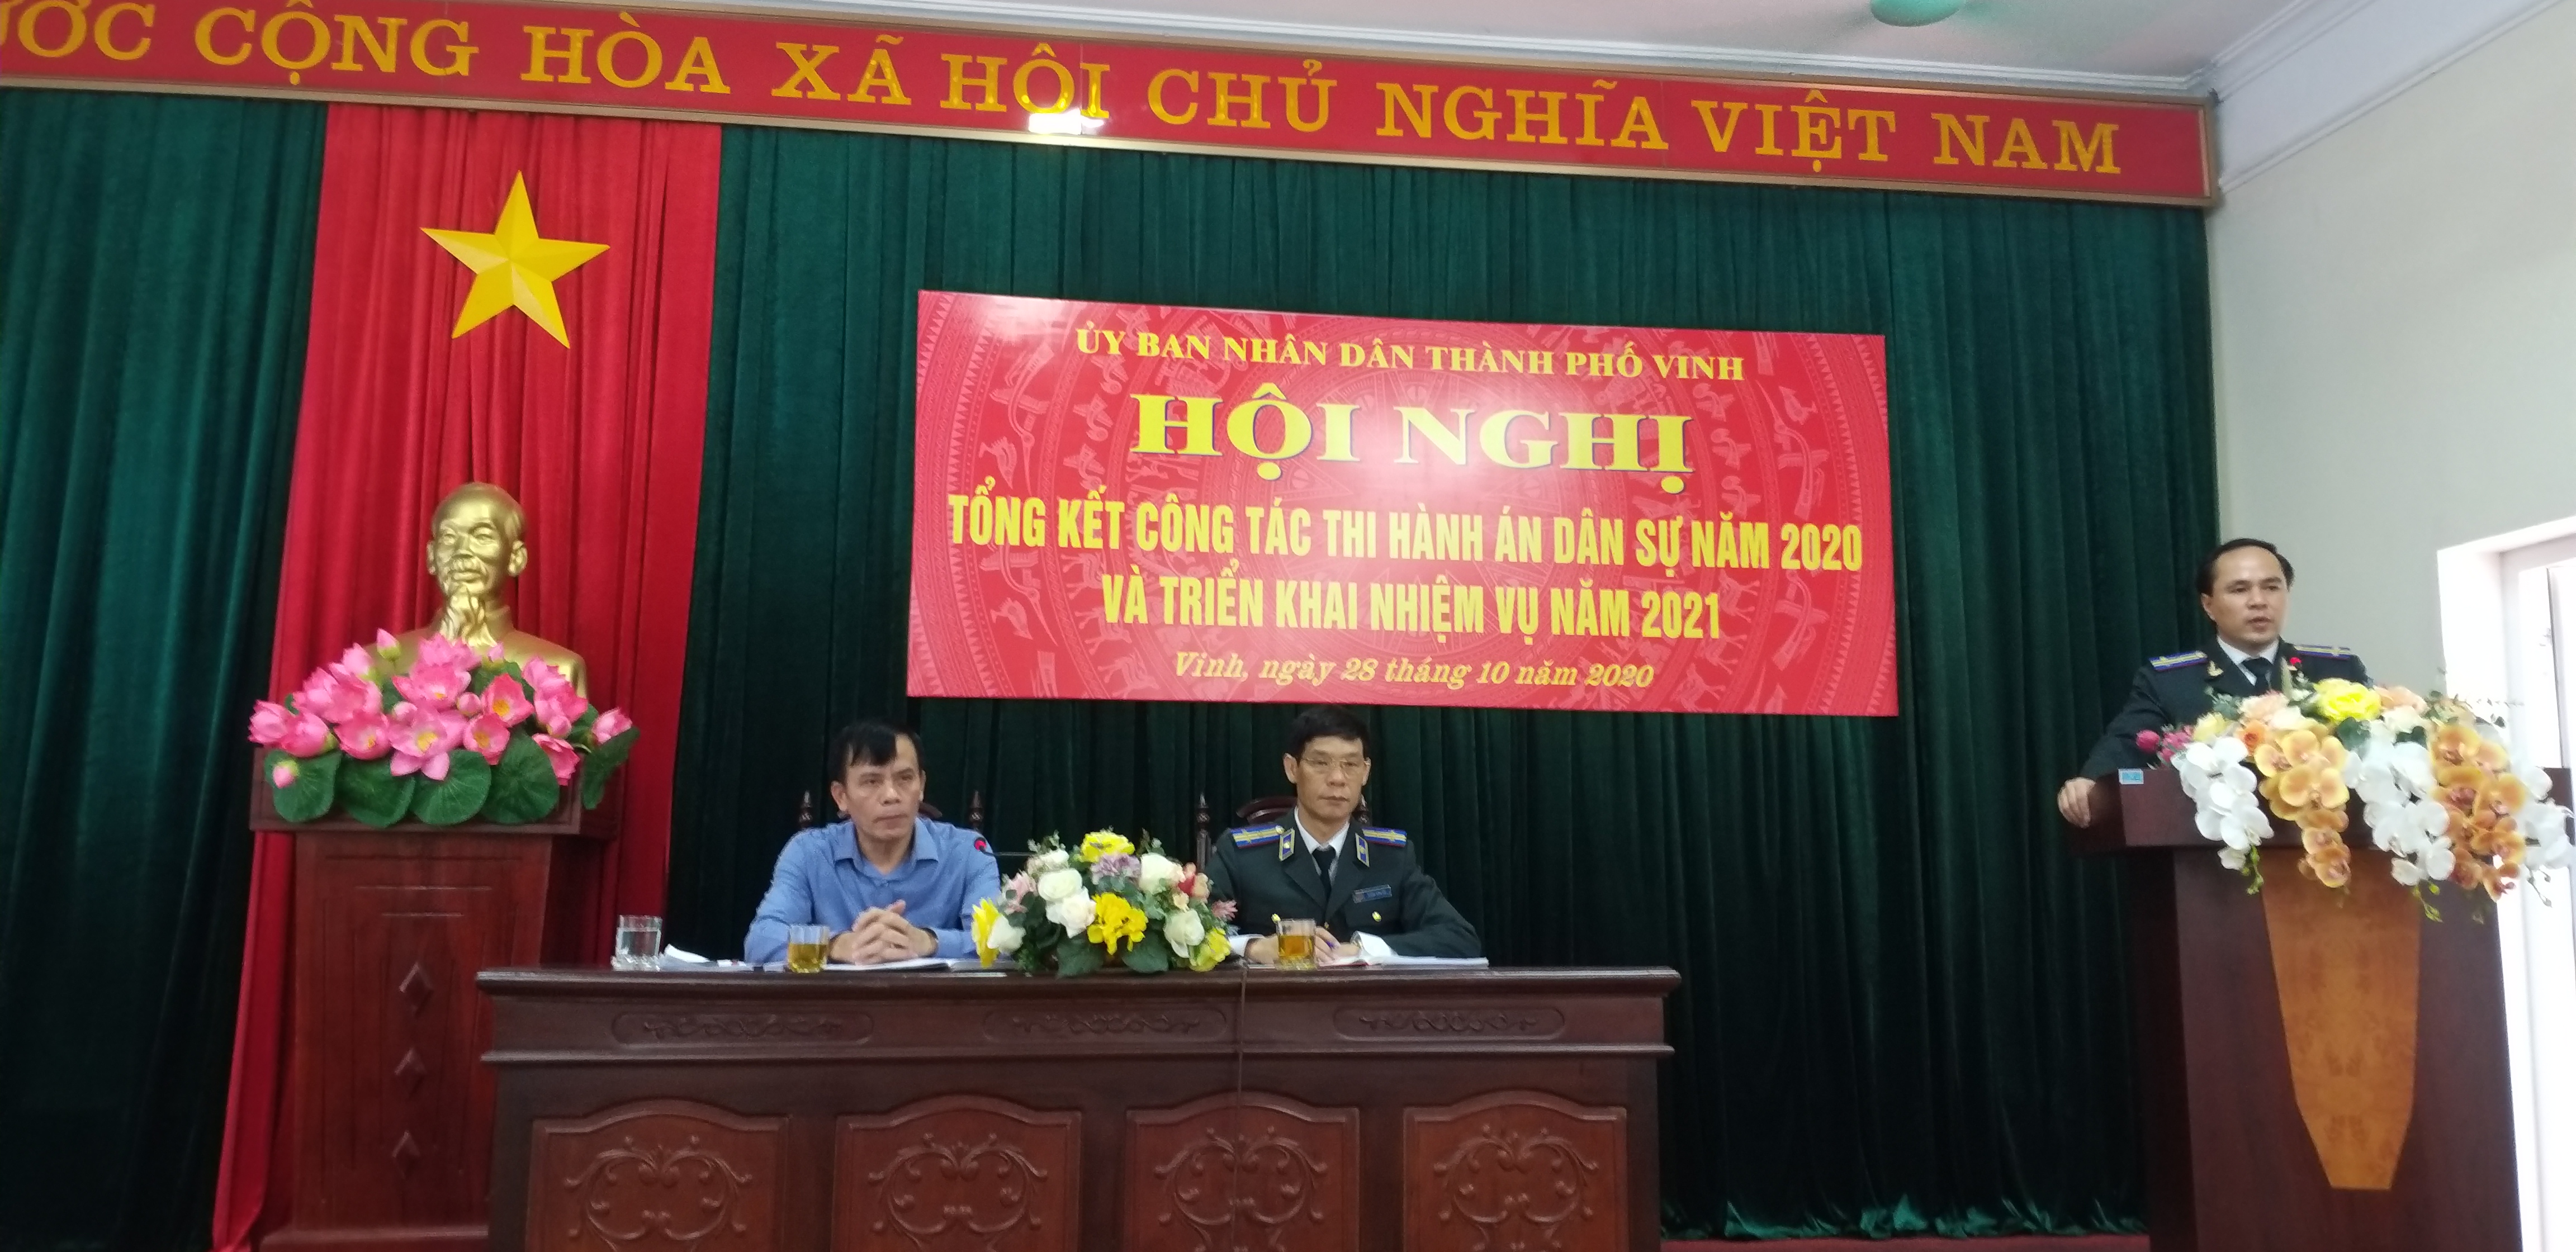 Ủy ban nhân dân thành phố Vinh, tỉnh Nghệ An tổ chức Hội nghị Tổng kết công tác Thi hành án dân sự năm 2020 và triển khai nhiệm vụ năm 2021.